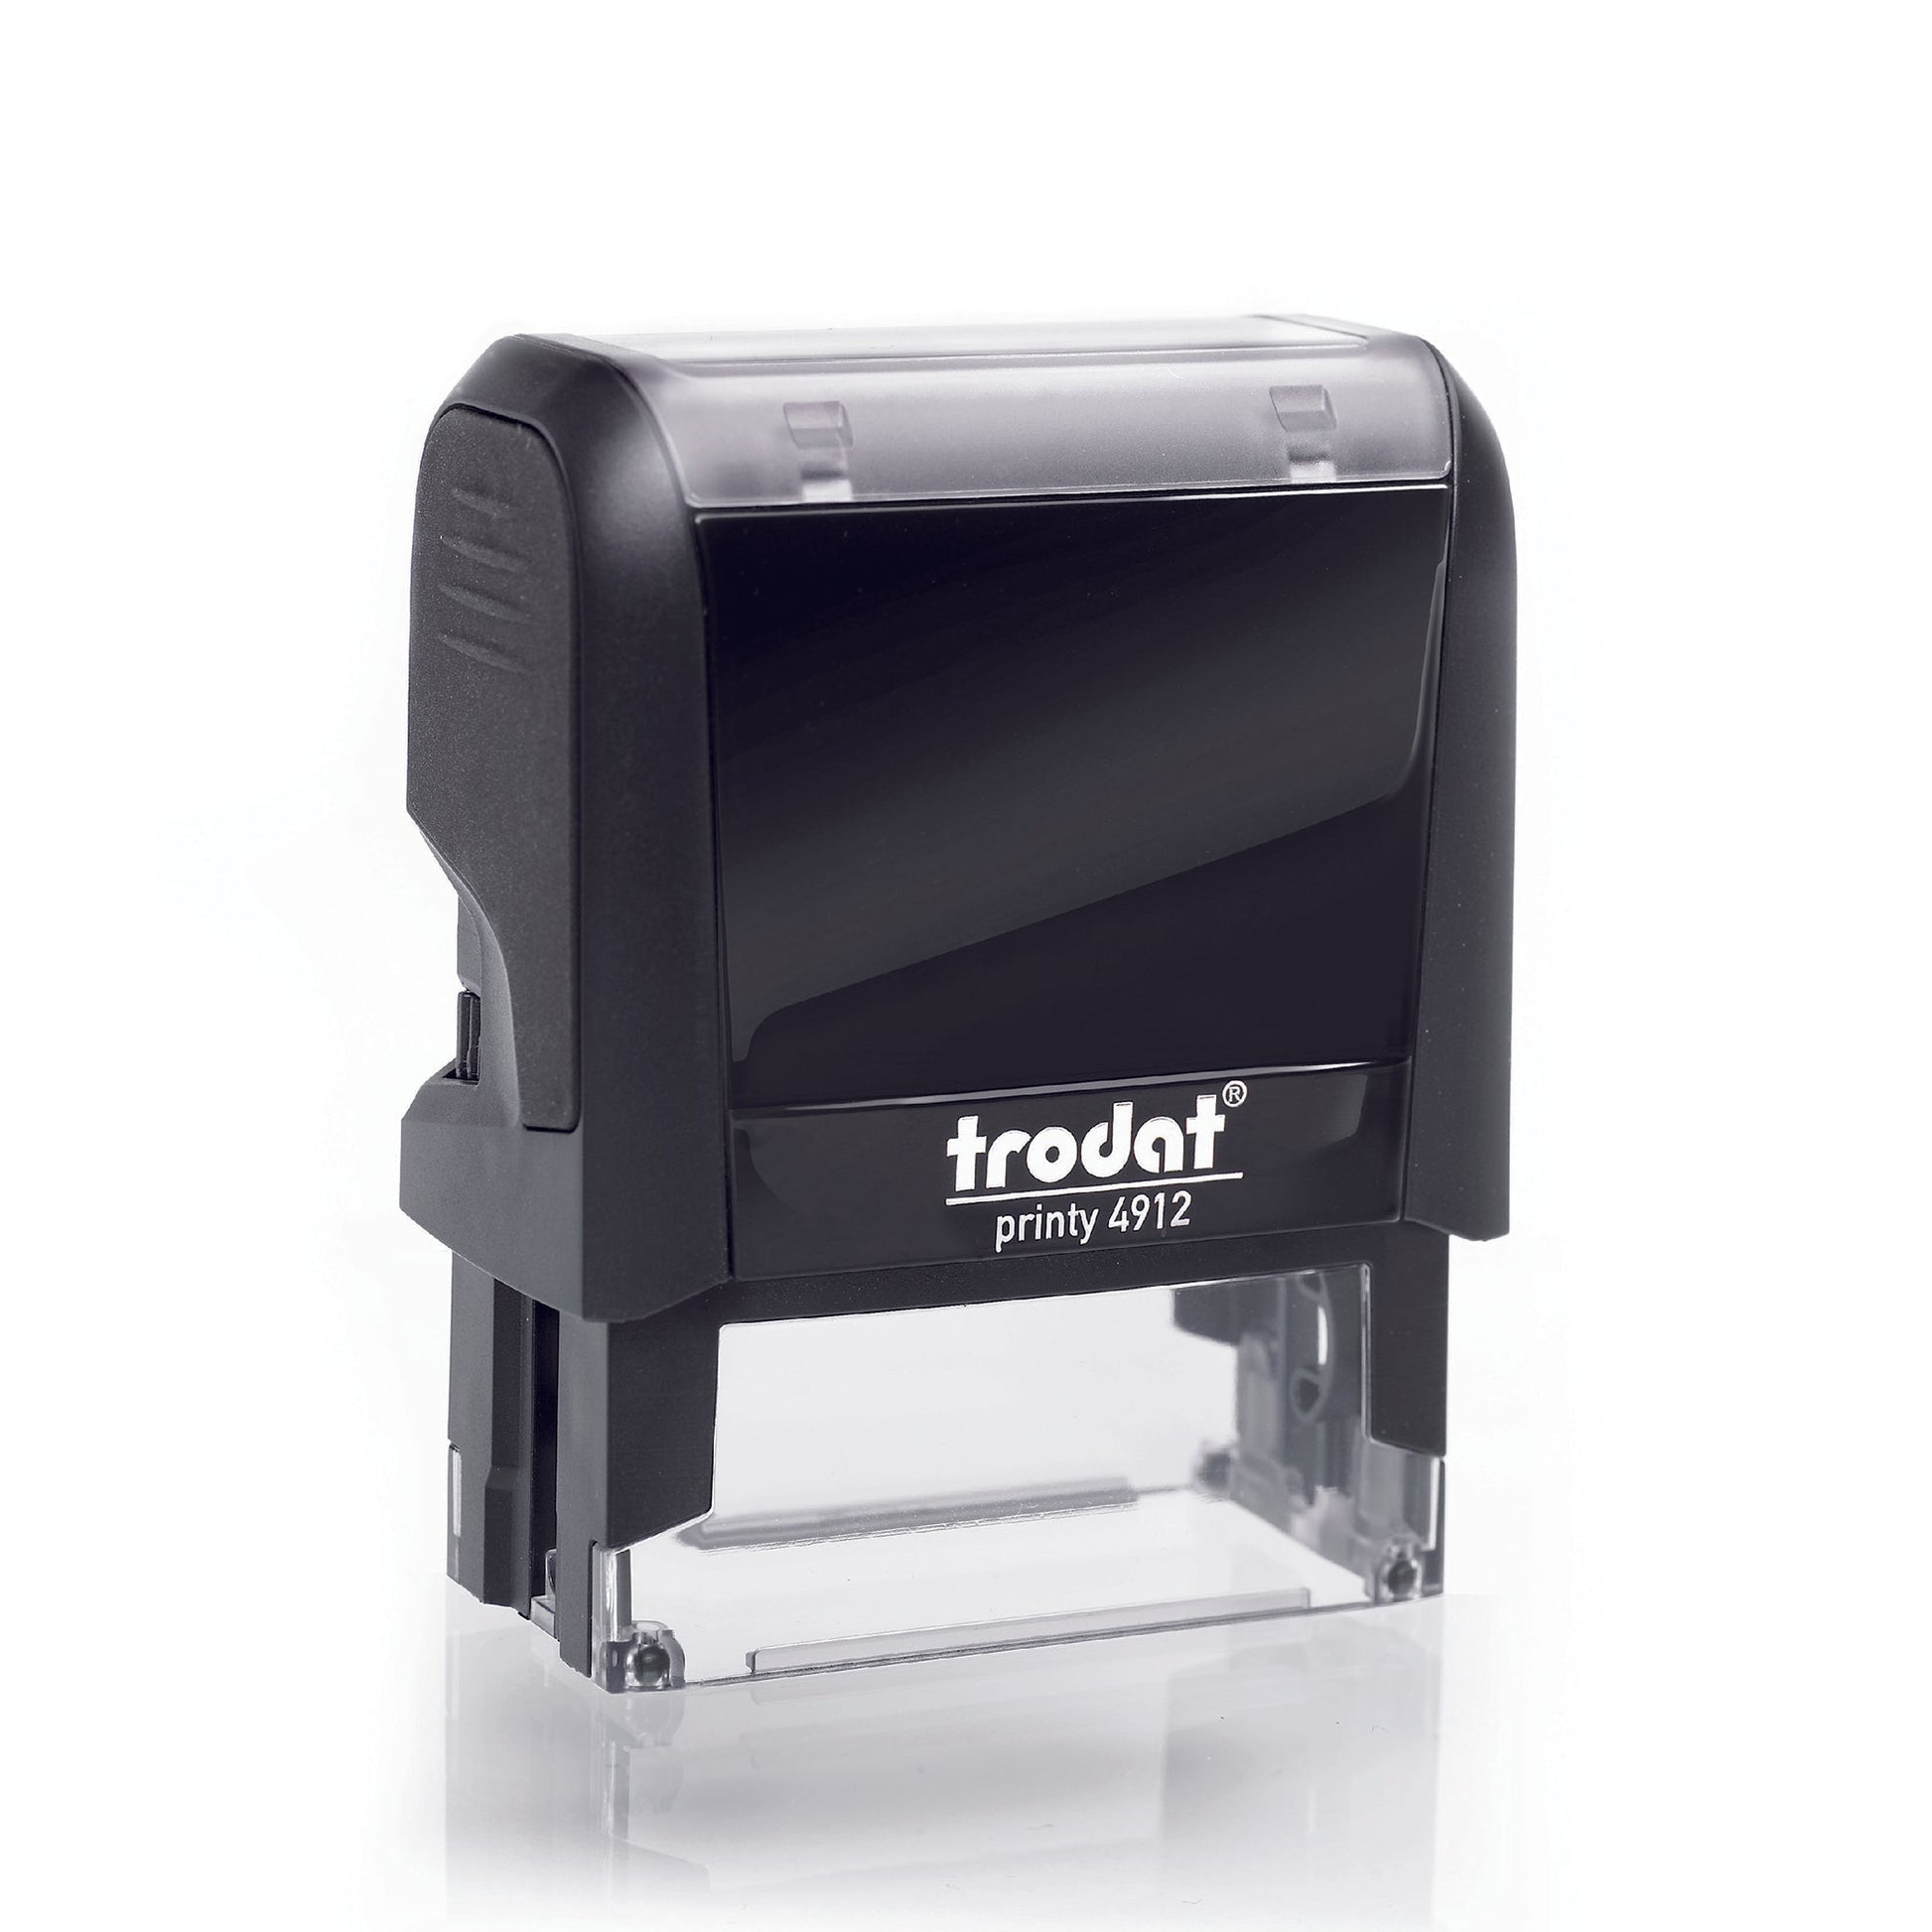 Refund - Rubber Stamp - Trodat 4912 - 43mm x 16mm Impression